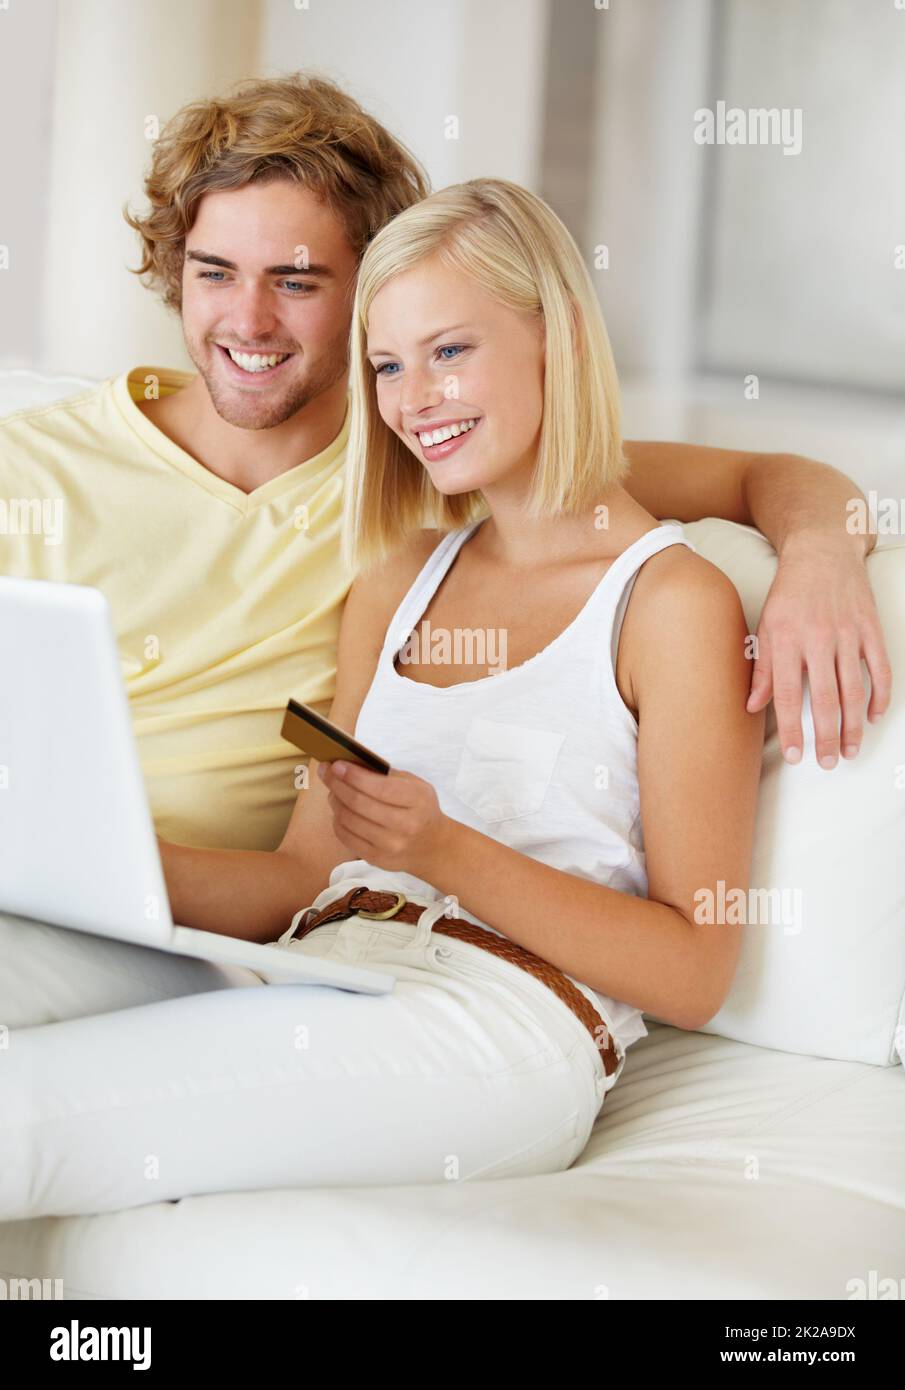 Auf der Suche nach etwas für ihr neues Haus. Ein glückliches junges Paar, das sein Online-Banking bequem von der Couch aus macht. Stockfoto